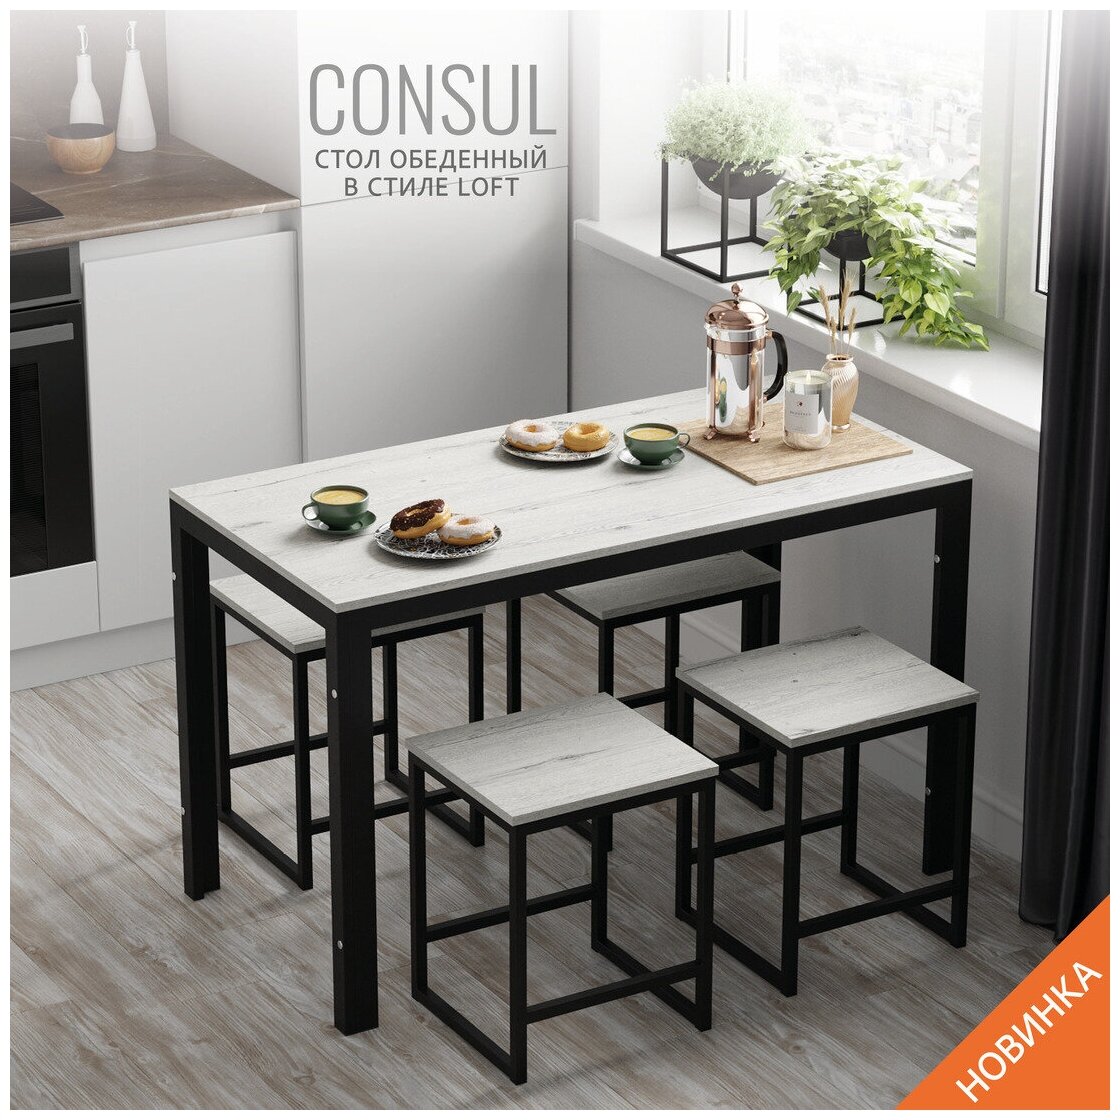 Стол обеденный нераскладной, кухонный стол, светло-серый, металлический, мебель лофт, 120х60х75 см, CONSUL loft, Гростат